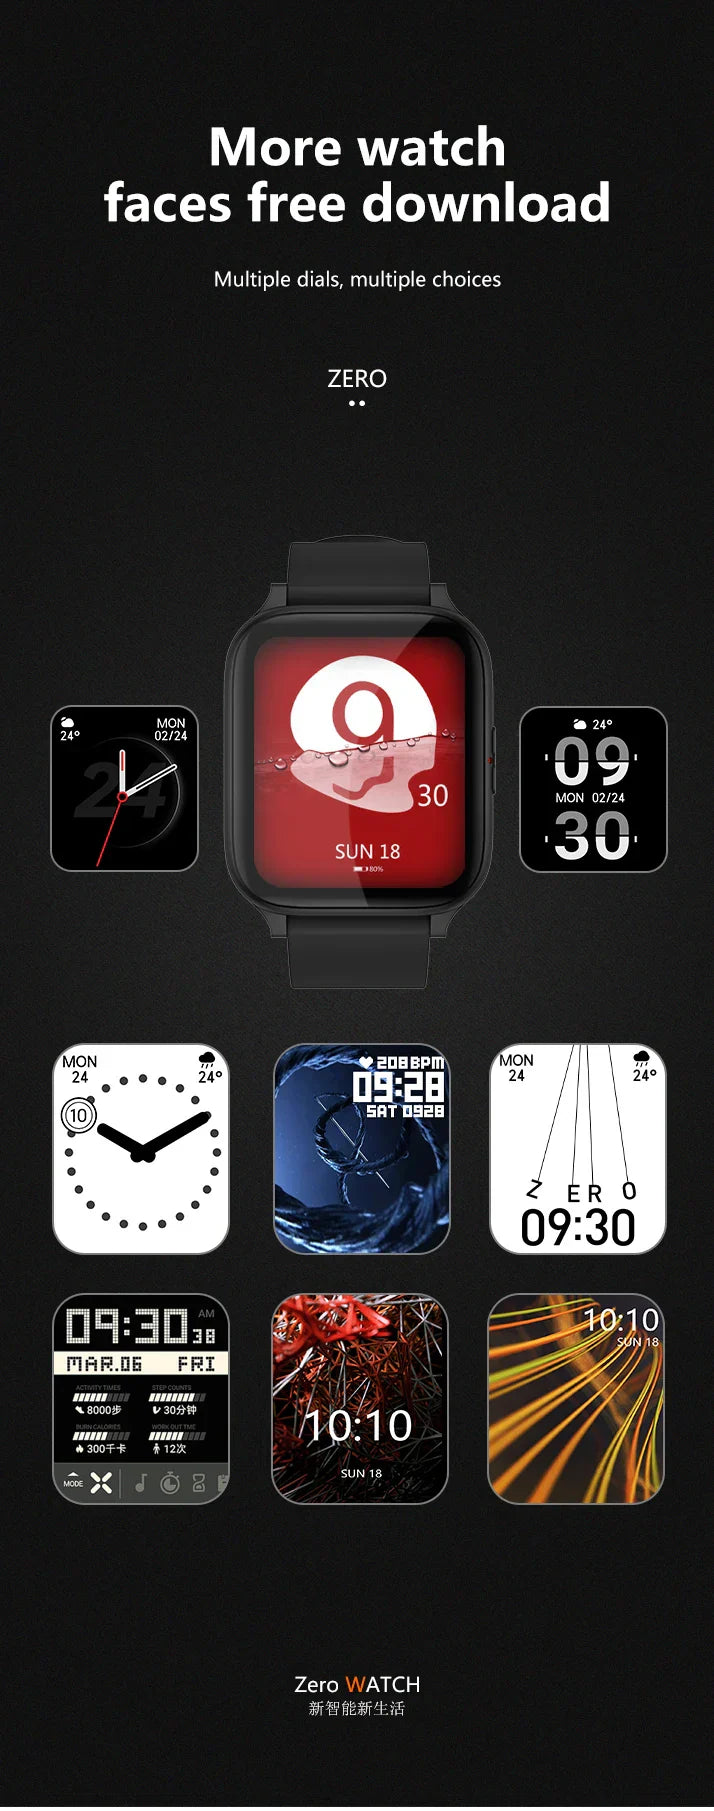 Smartwatch para Android iOS -ÚLTIMAS UNIDADES